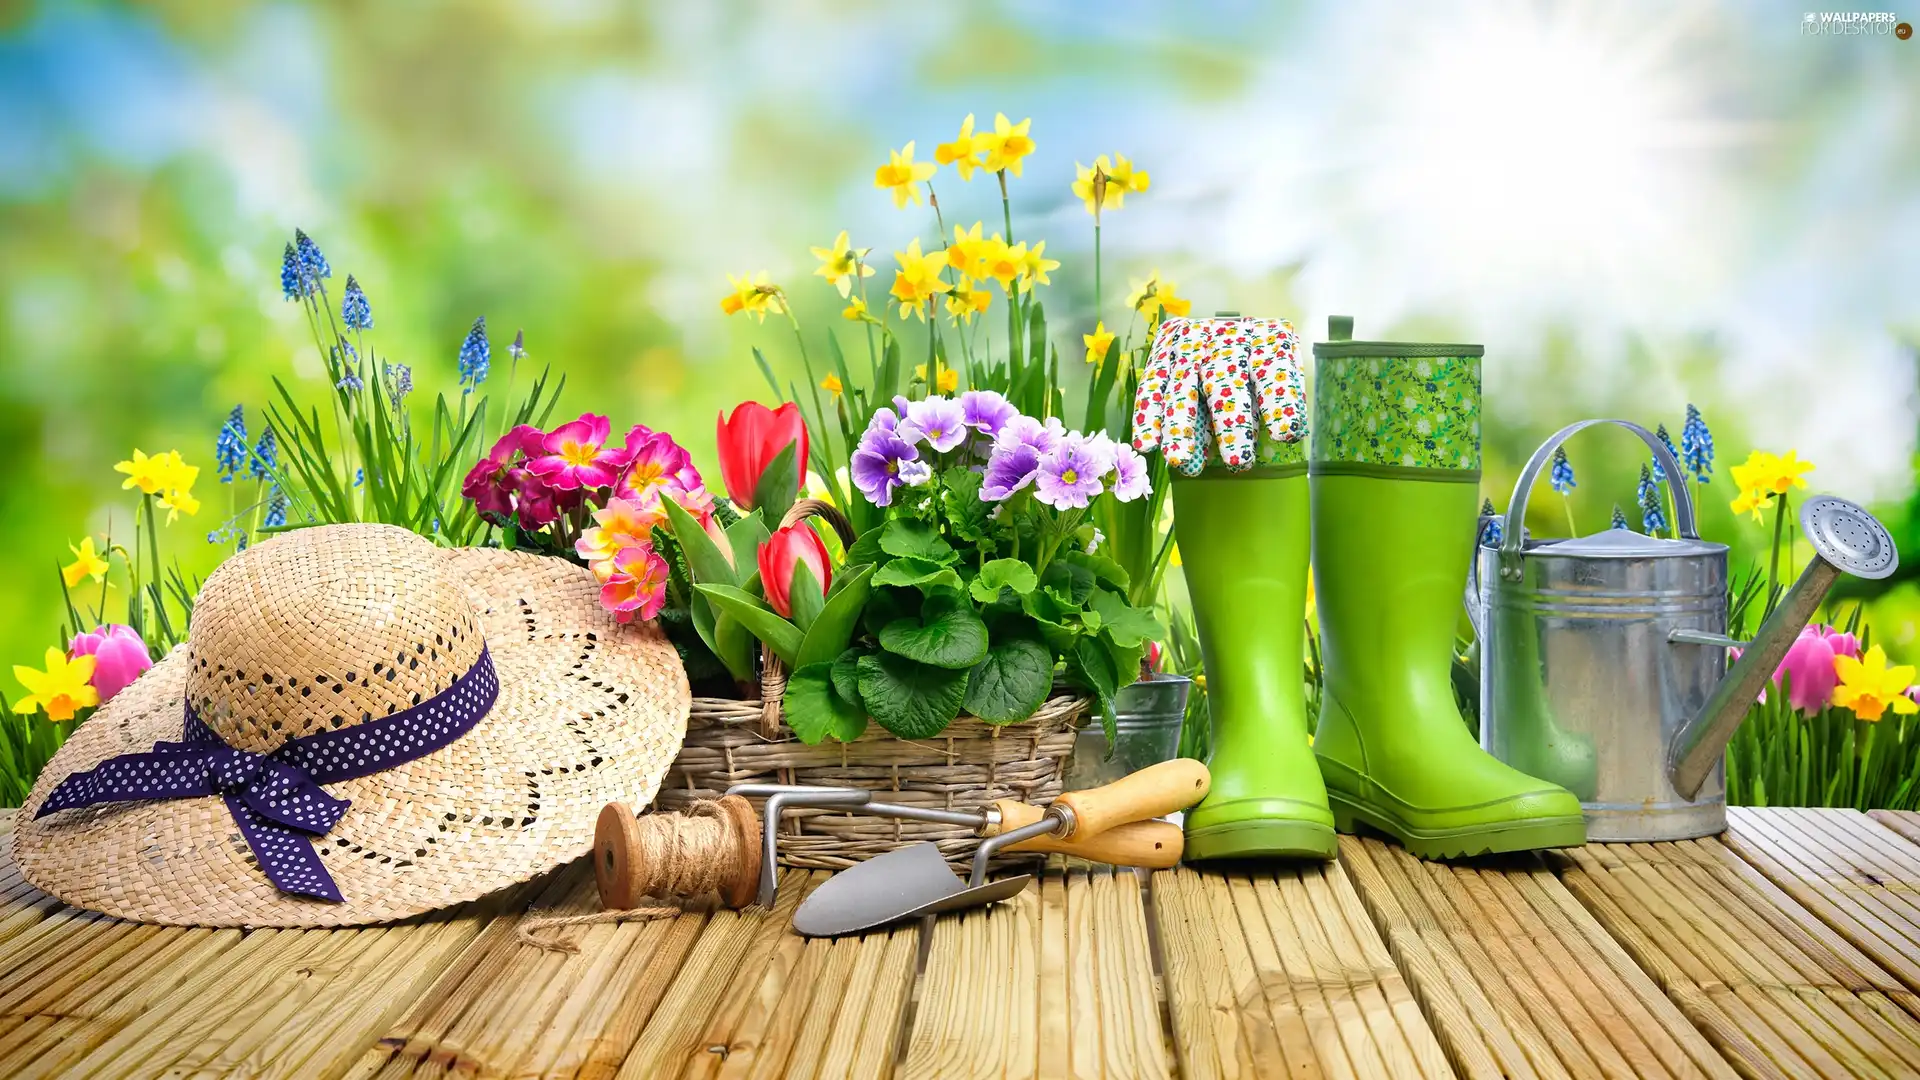 planting, Spring, flowers, tools, basket, watering can, Hat, primroses, wellingtons